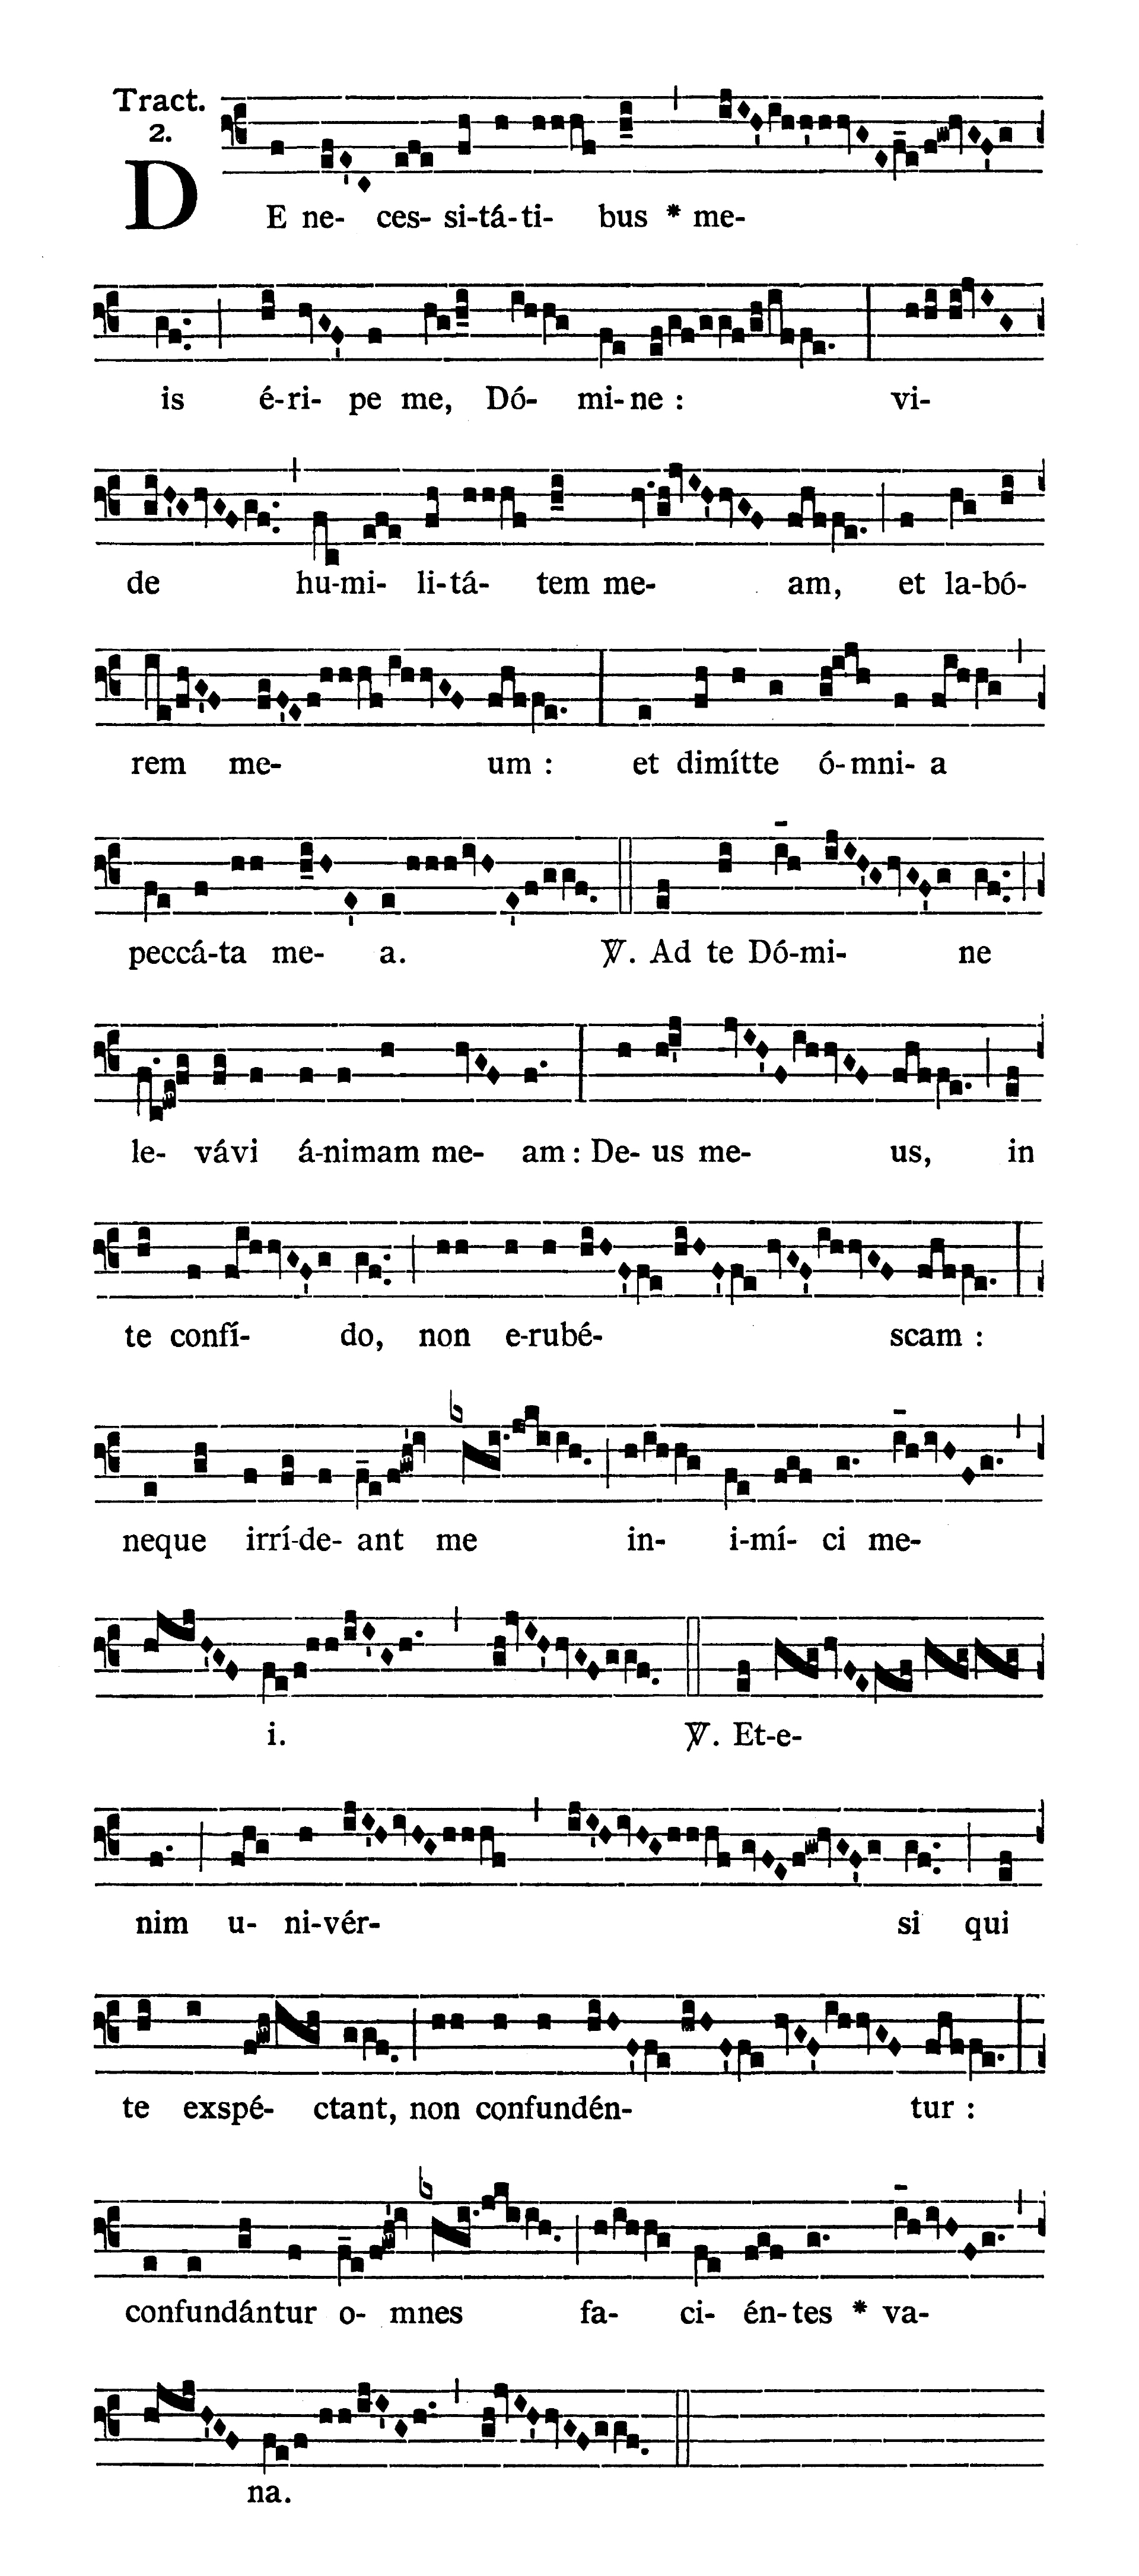 Feria IV Quatuor Temporum Quadragesimae (Ember Wednesday of Lent) - Tractus (De necessitatibus meis)